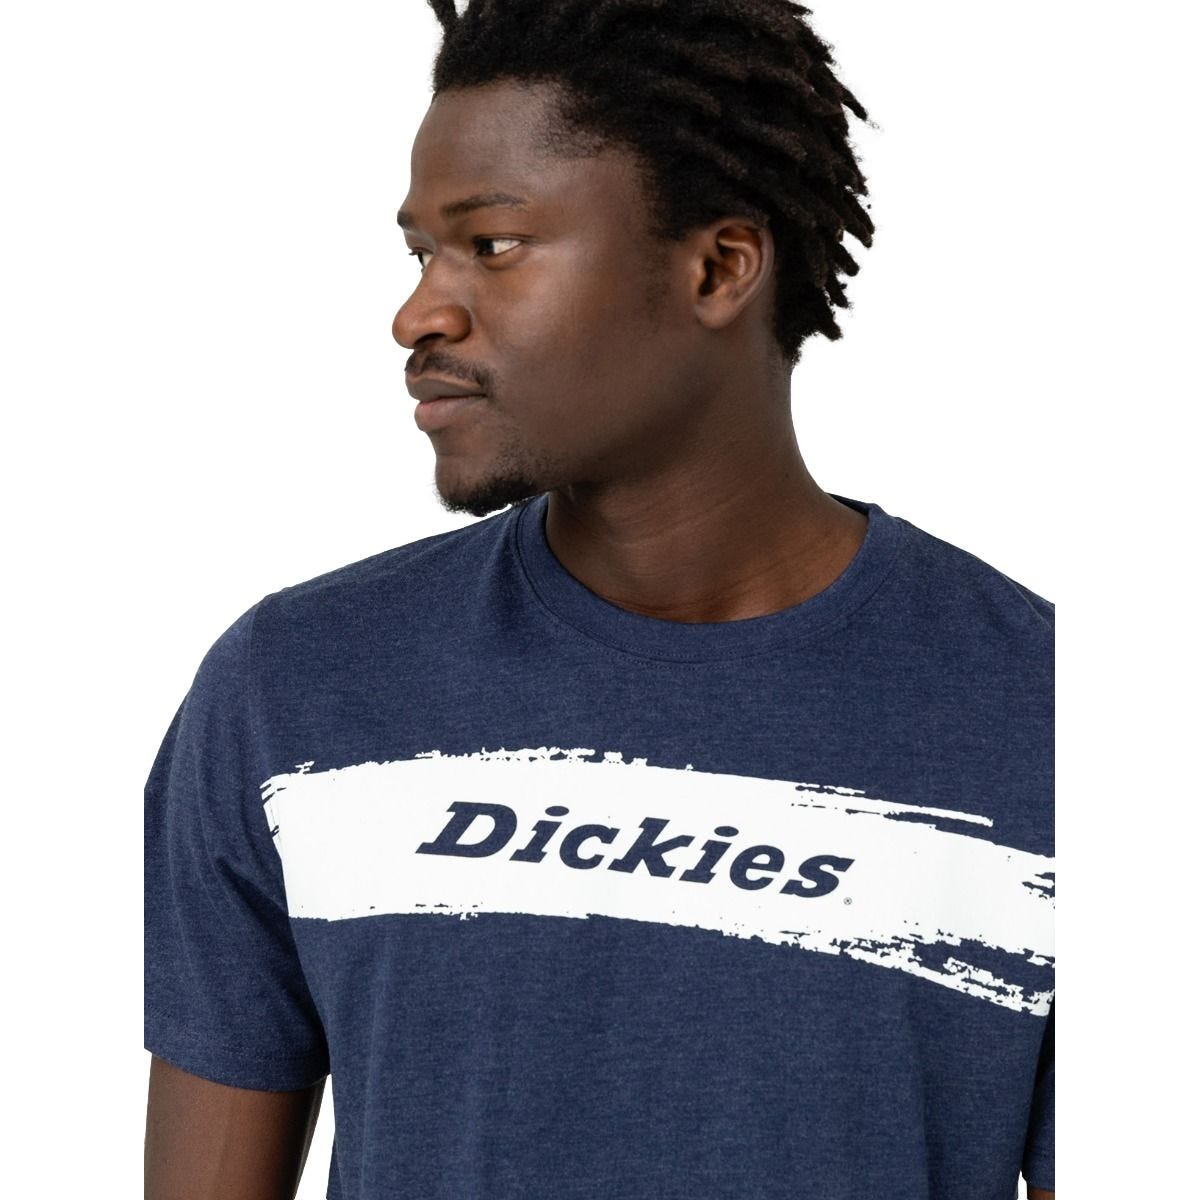 T-shirt à manches courtes pour homme Stanton bleu marine - Dickies - Taille L 3